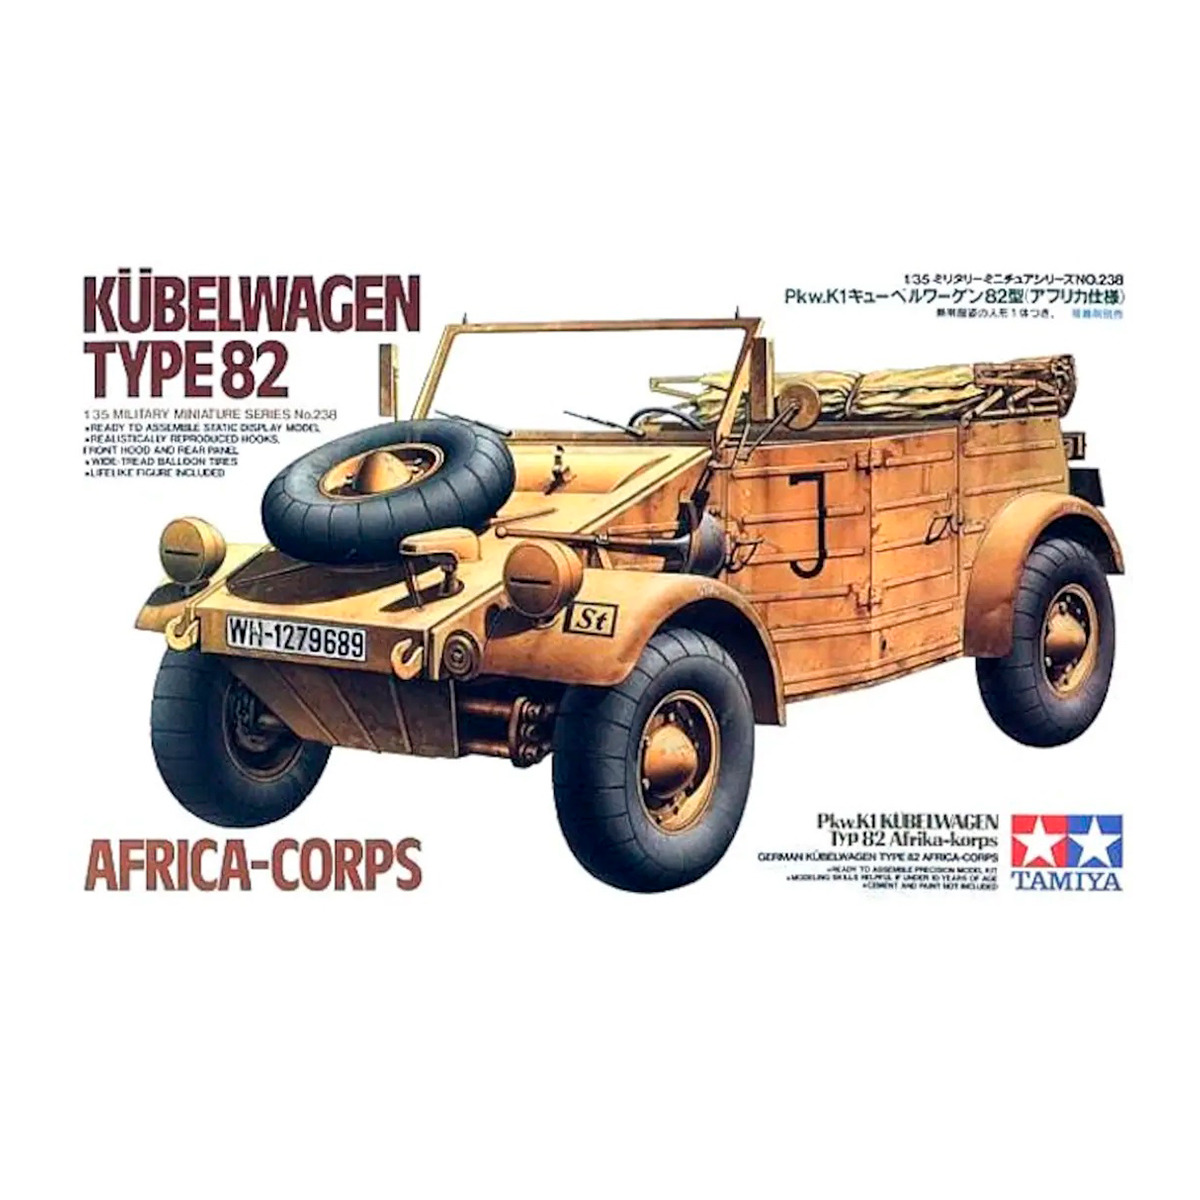 1/35 German Kubelwagen Type 82 Africa-corps